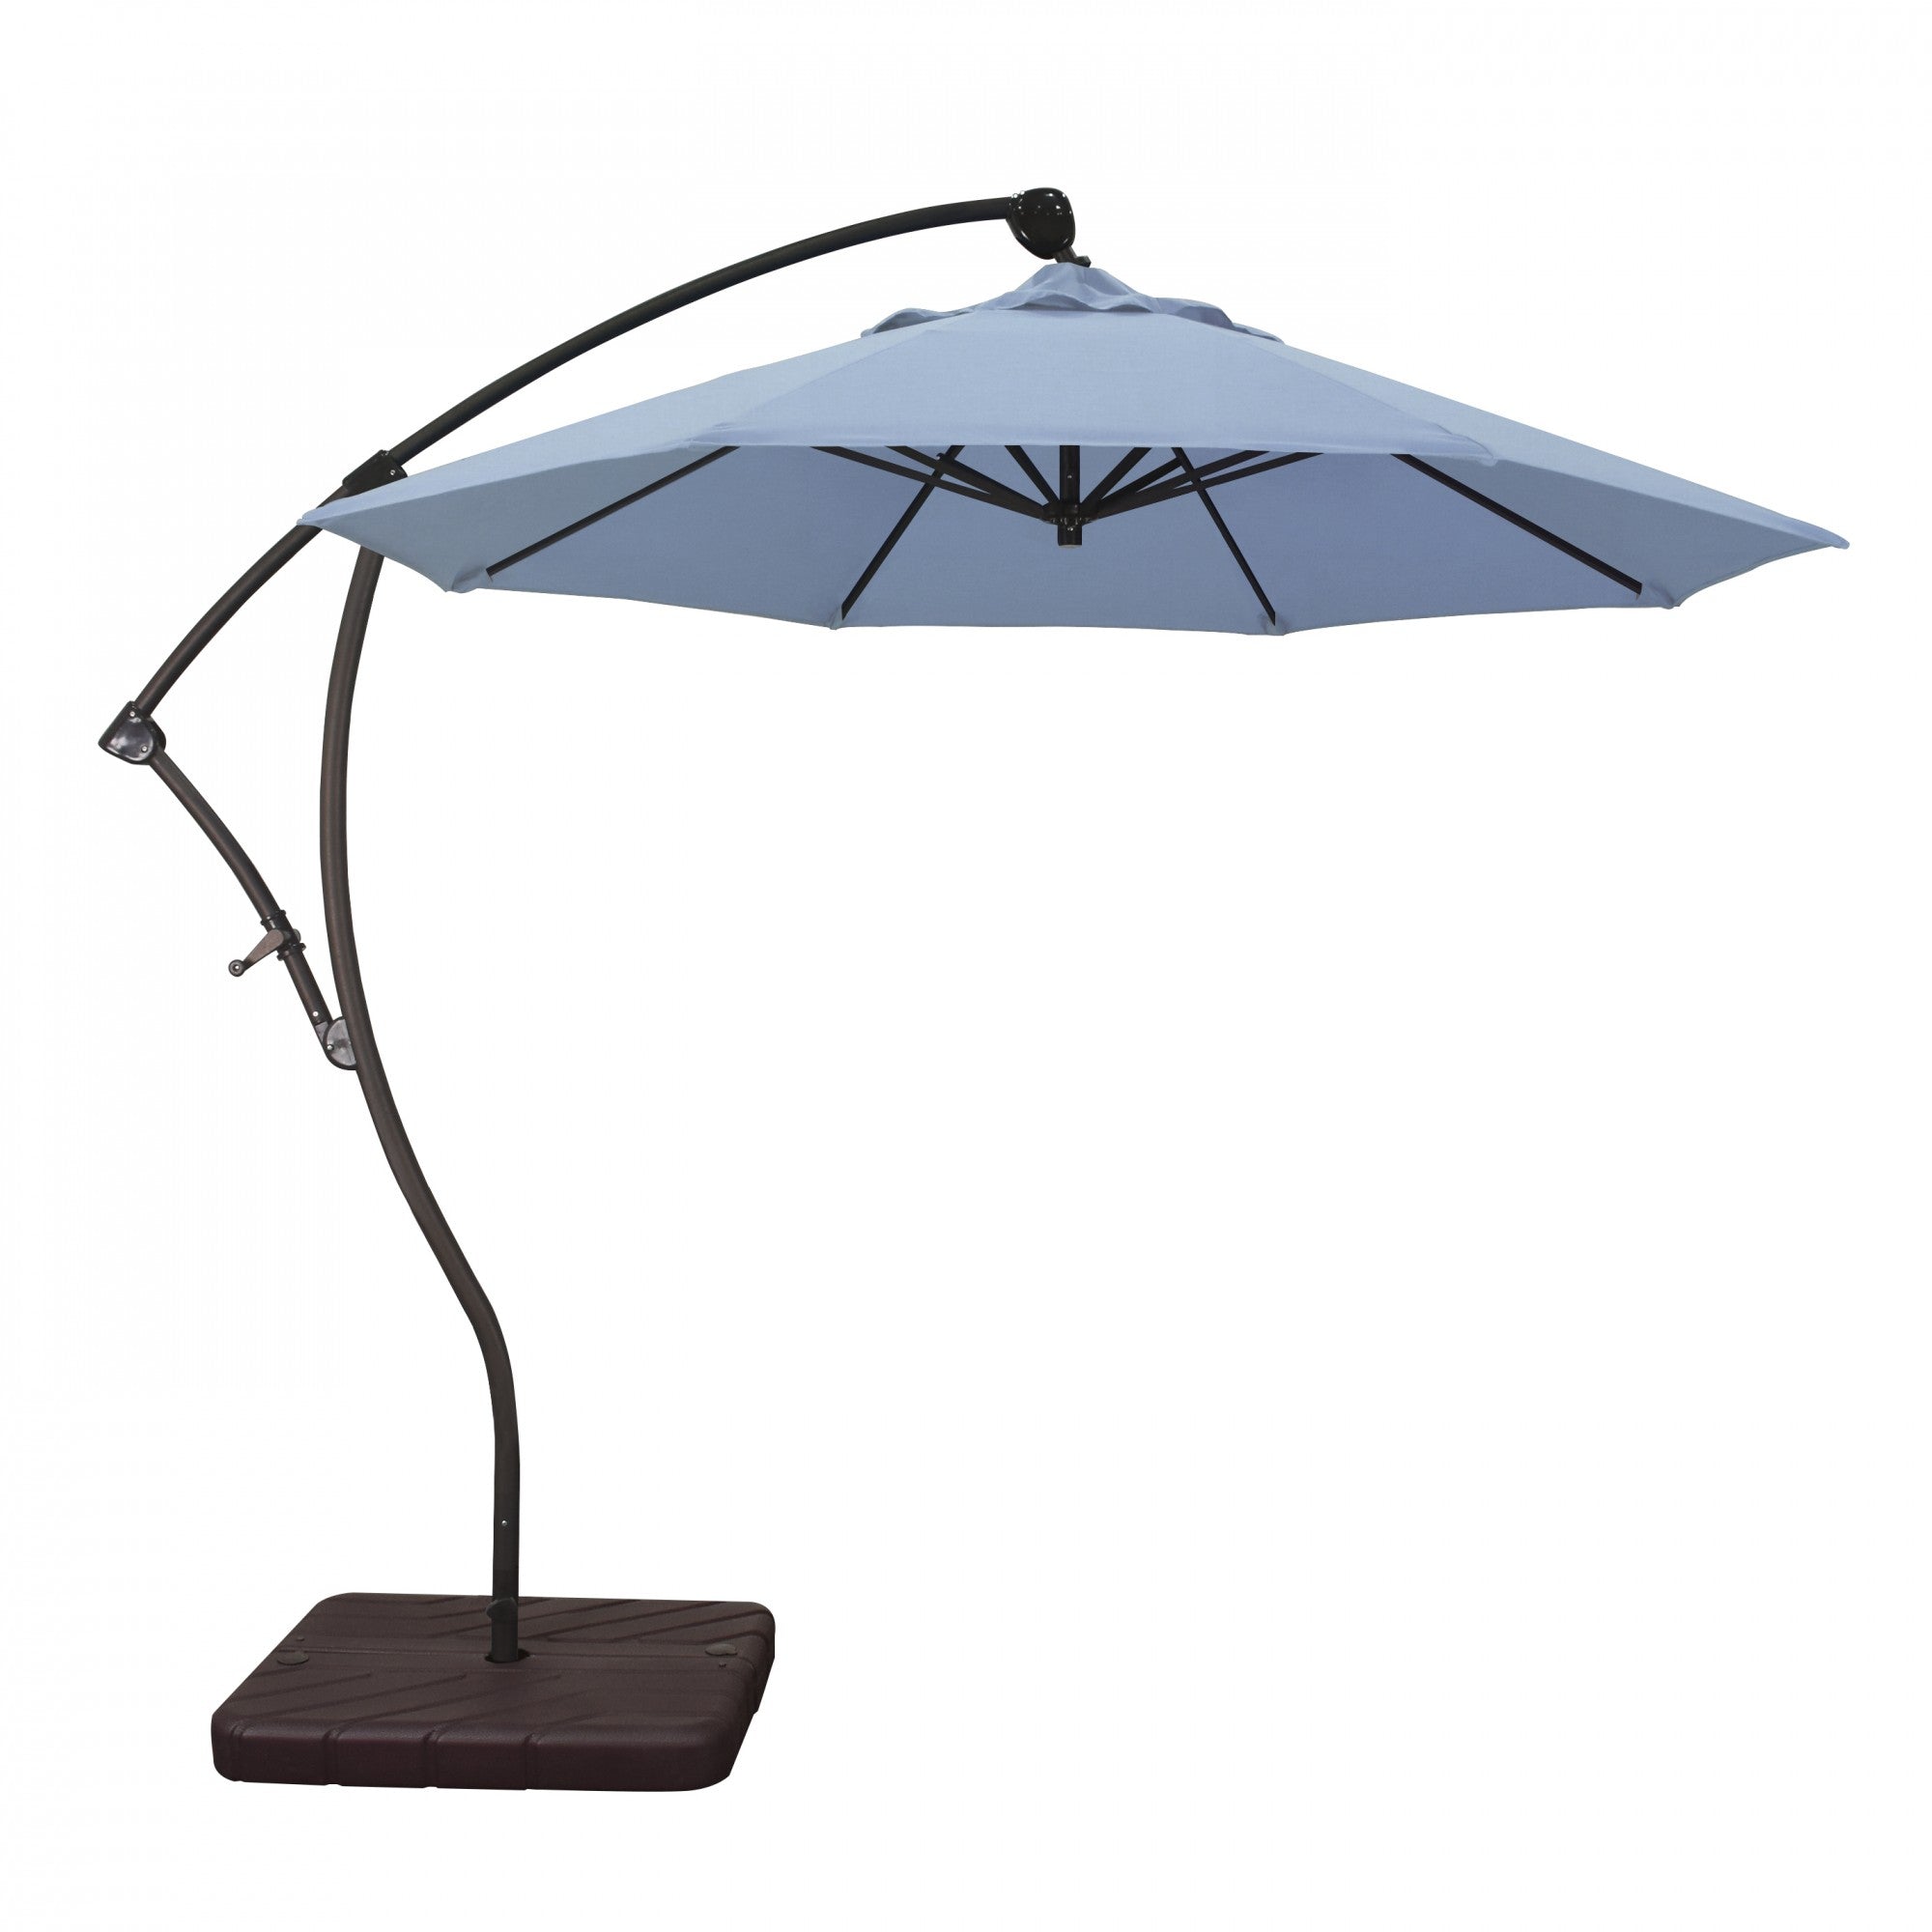 California Umbrella - 9' - Cantilever Umbrella - Aluminum Pole - Air Blue - Sunbrella  - BA908117-5410